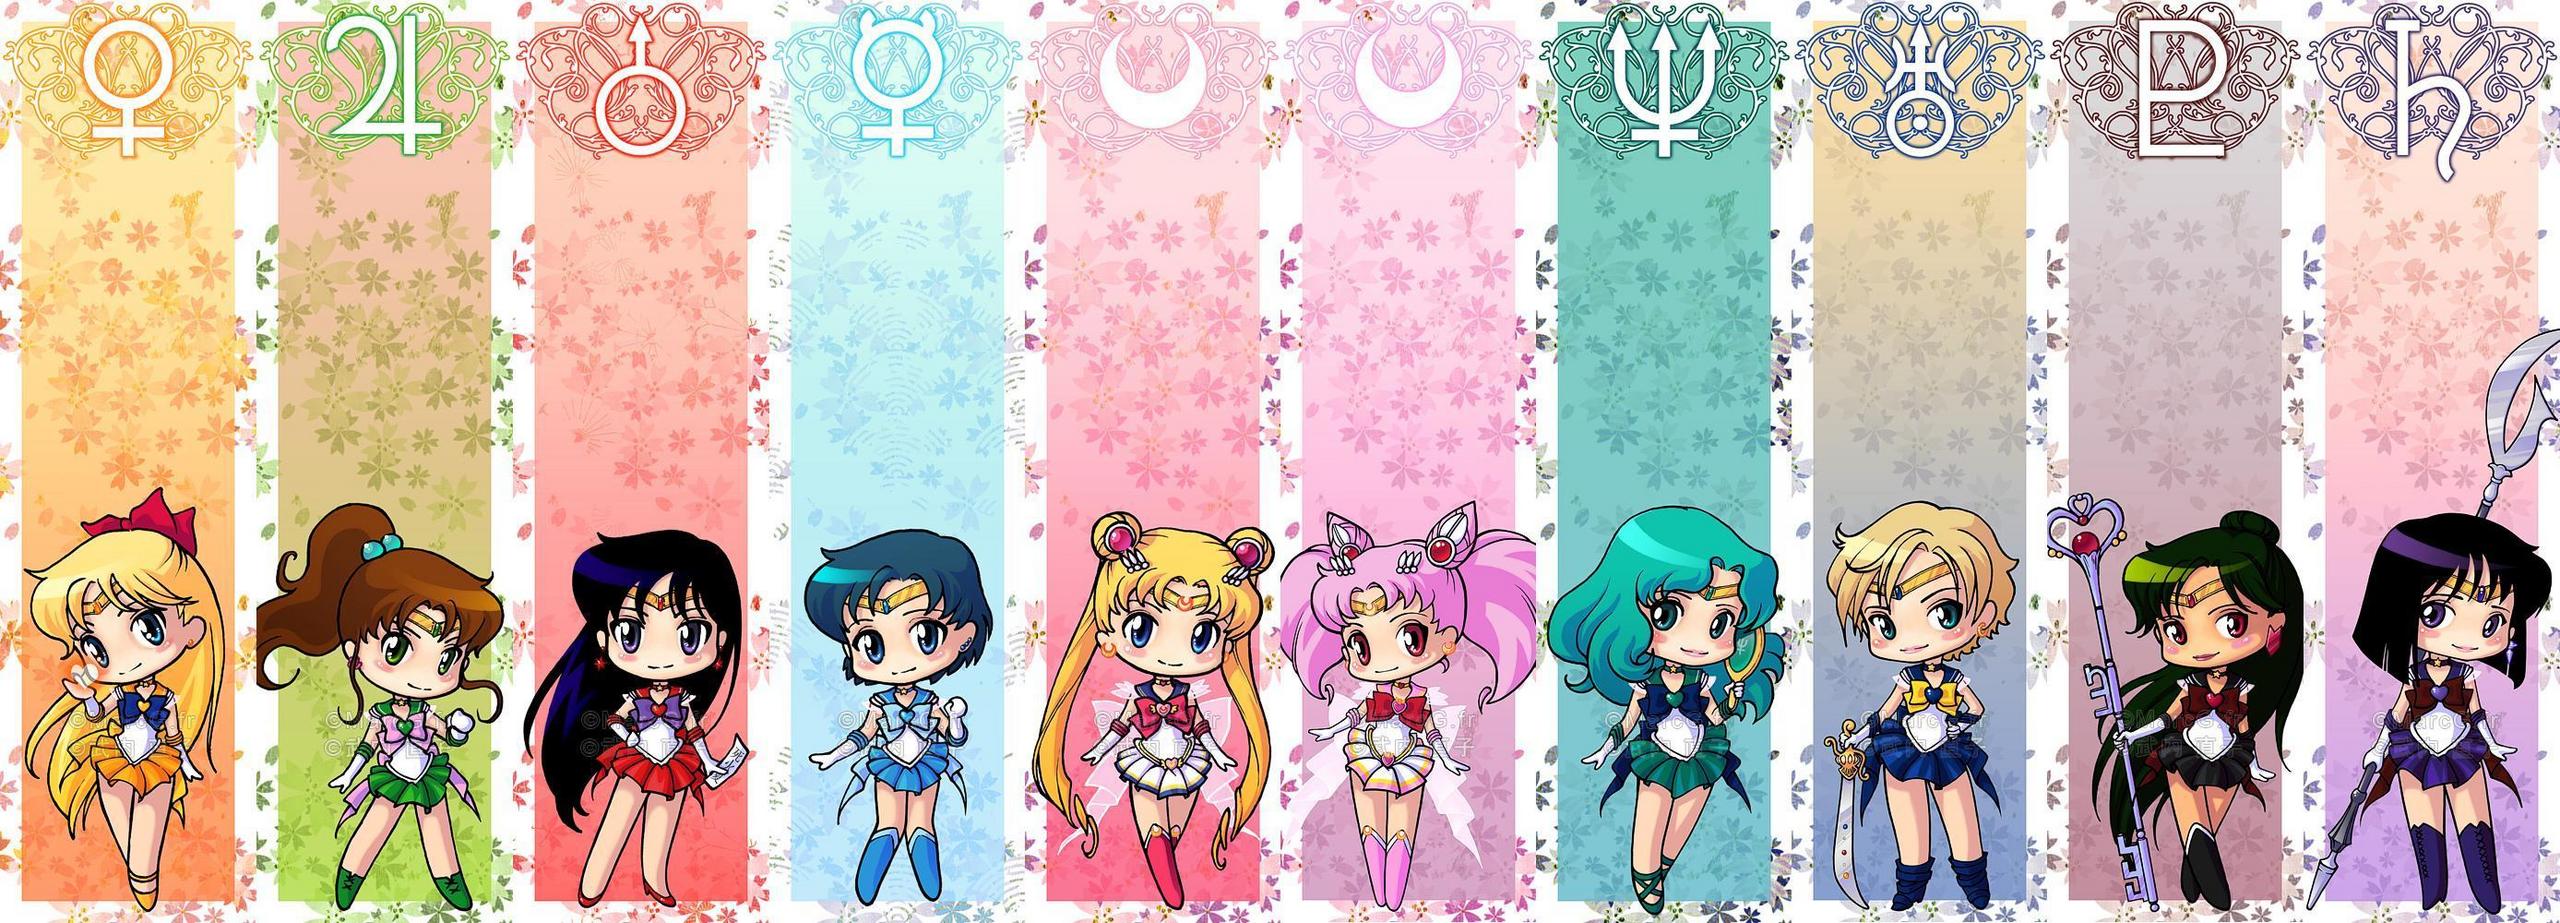 Sailor Moon Image Wallpaper Photos